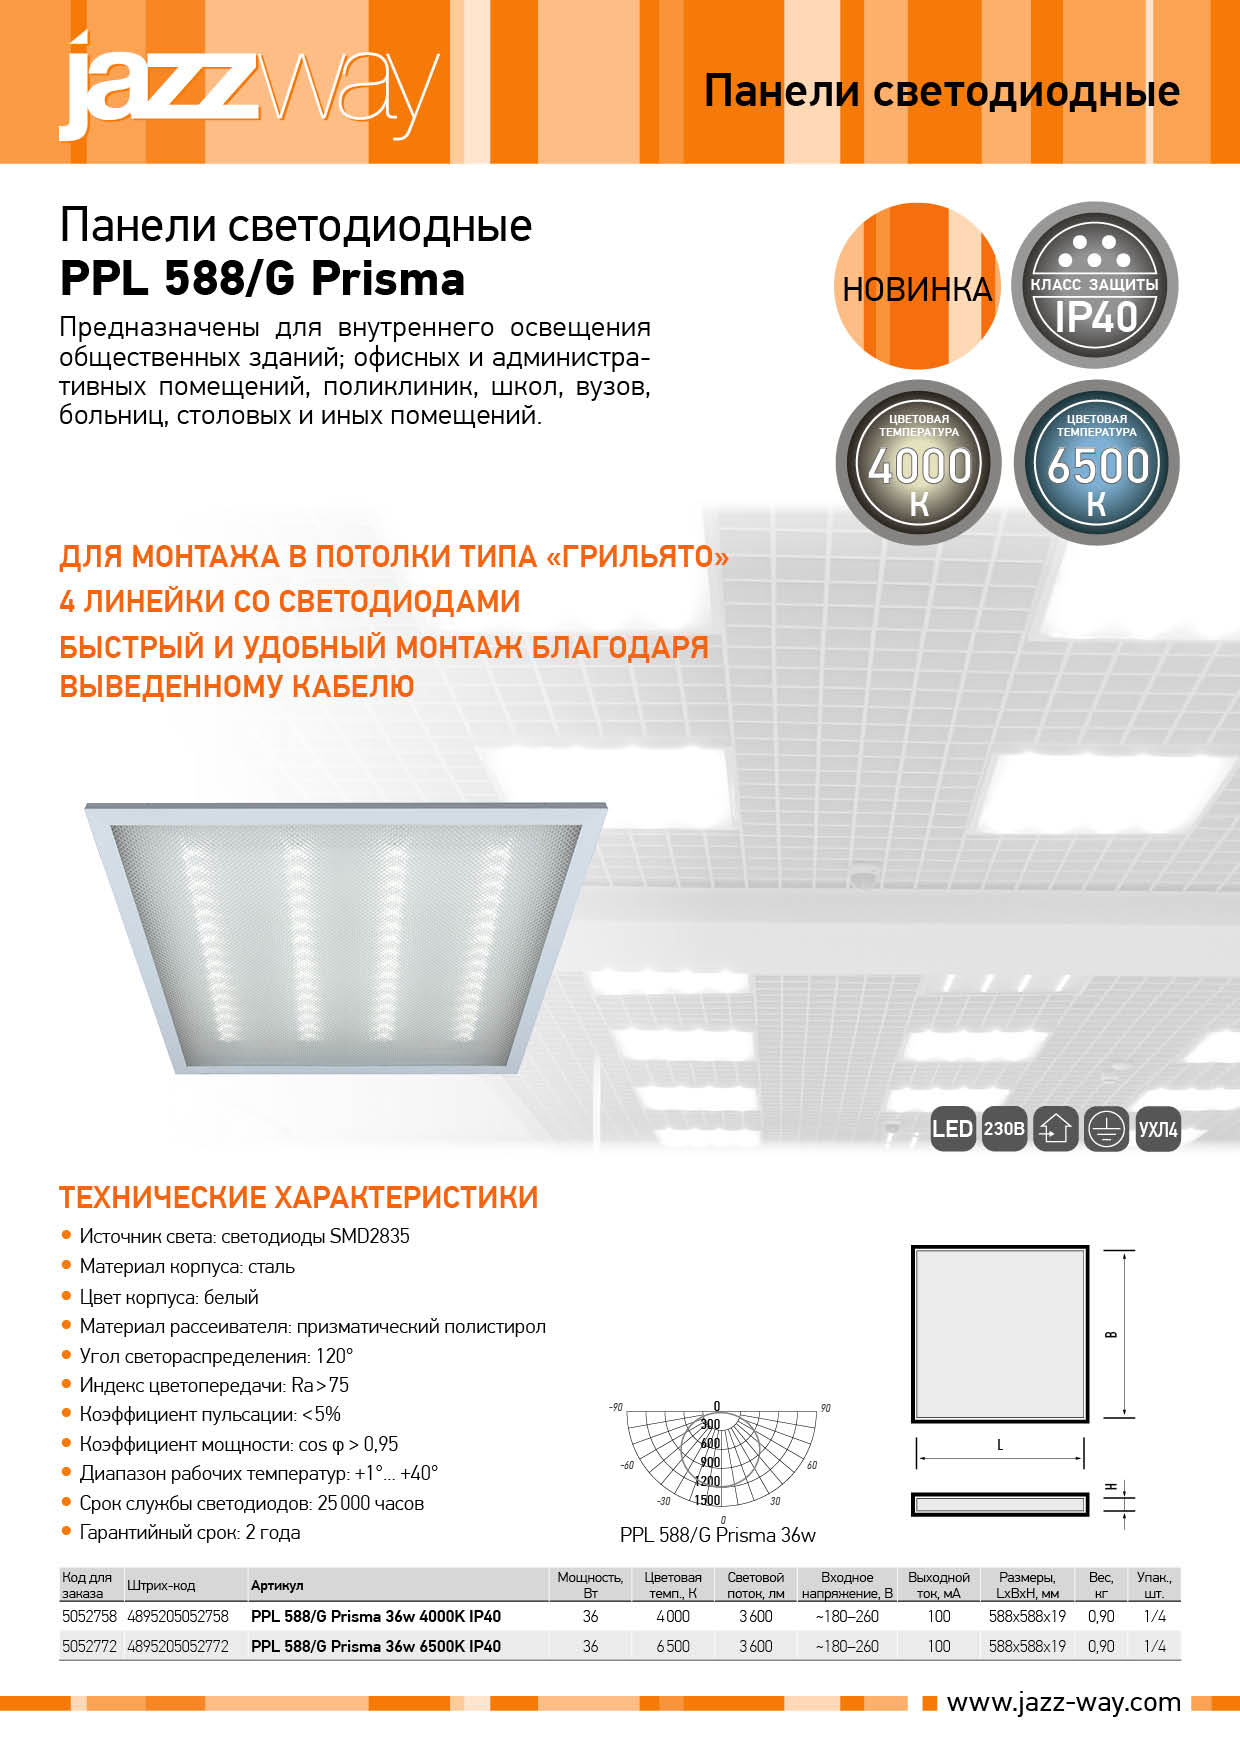 Светодиодные панели PPL 588/G Prisma